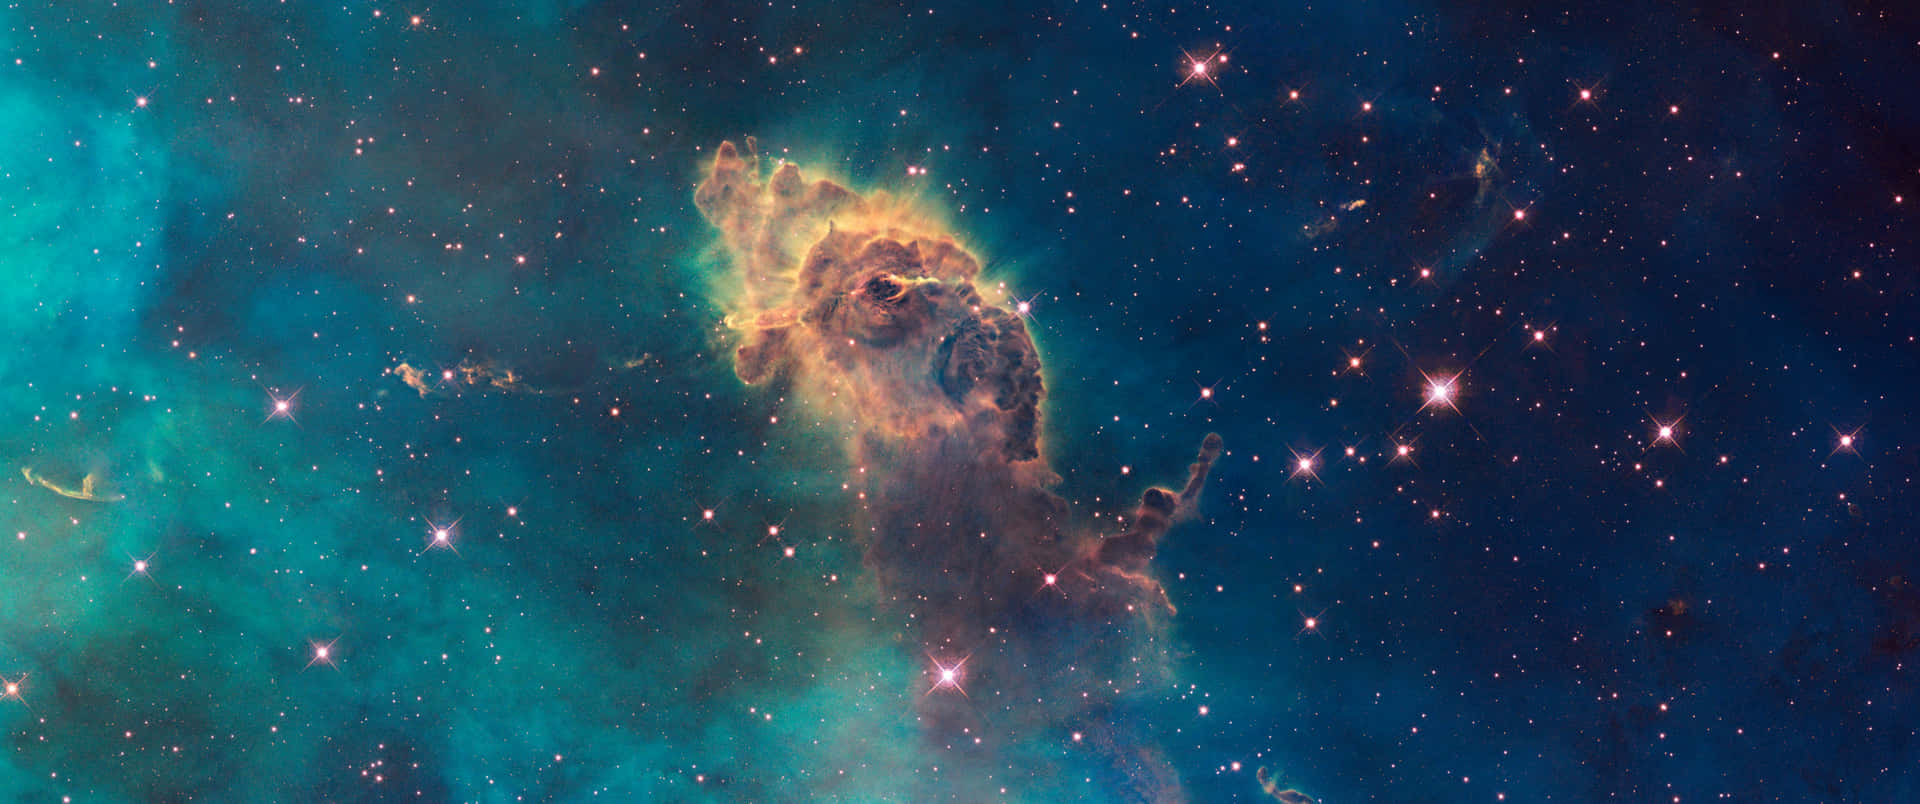 Eineblaue Und Grüne Nebula Mit Sternen Im Hintergrund Wallpaper